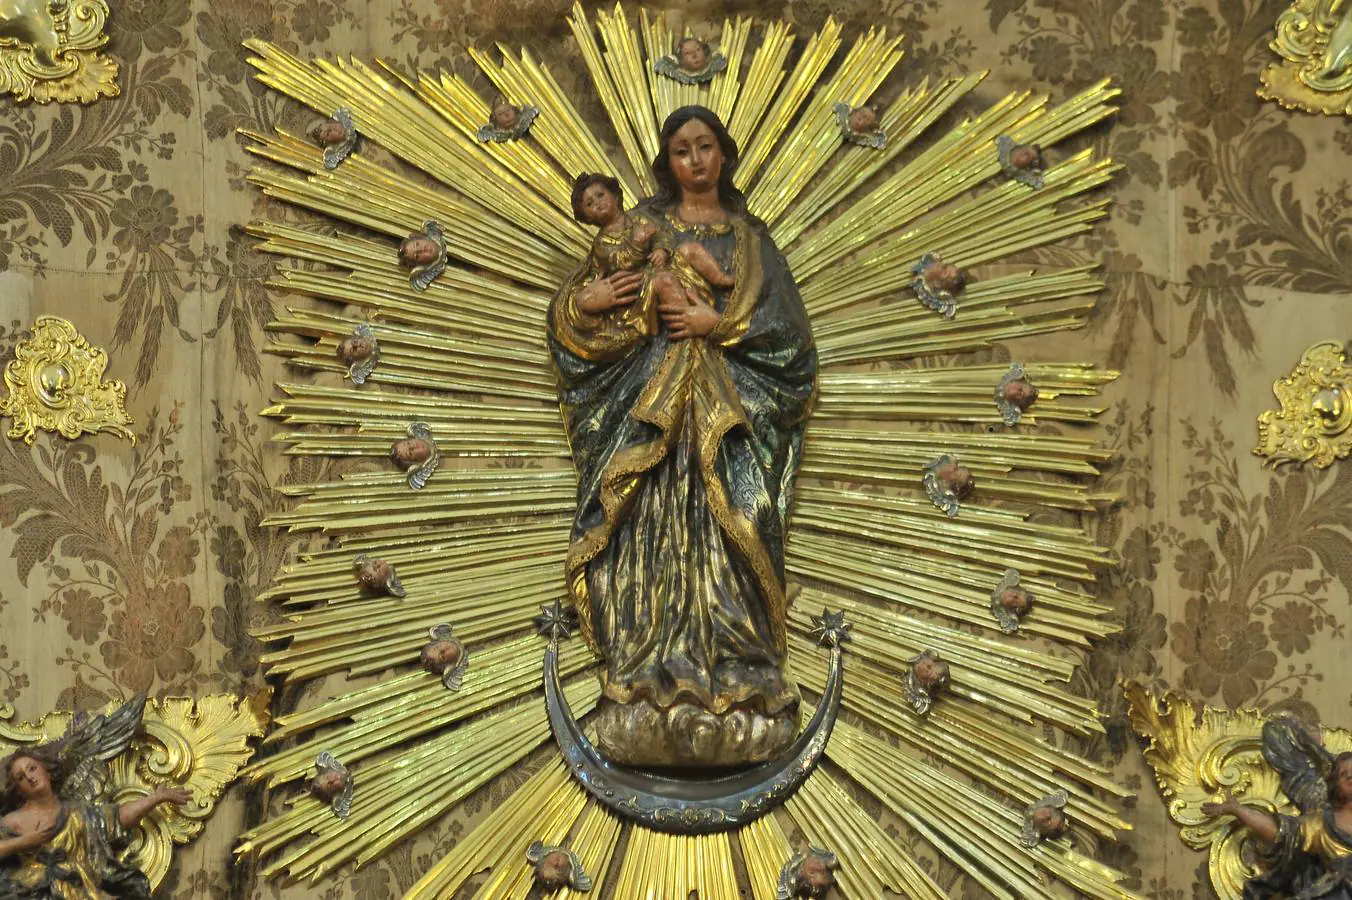 Galería del besamanos de la Virgen de la Candelaria